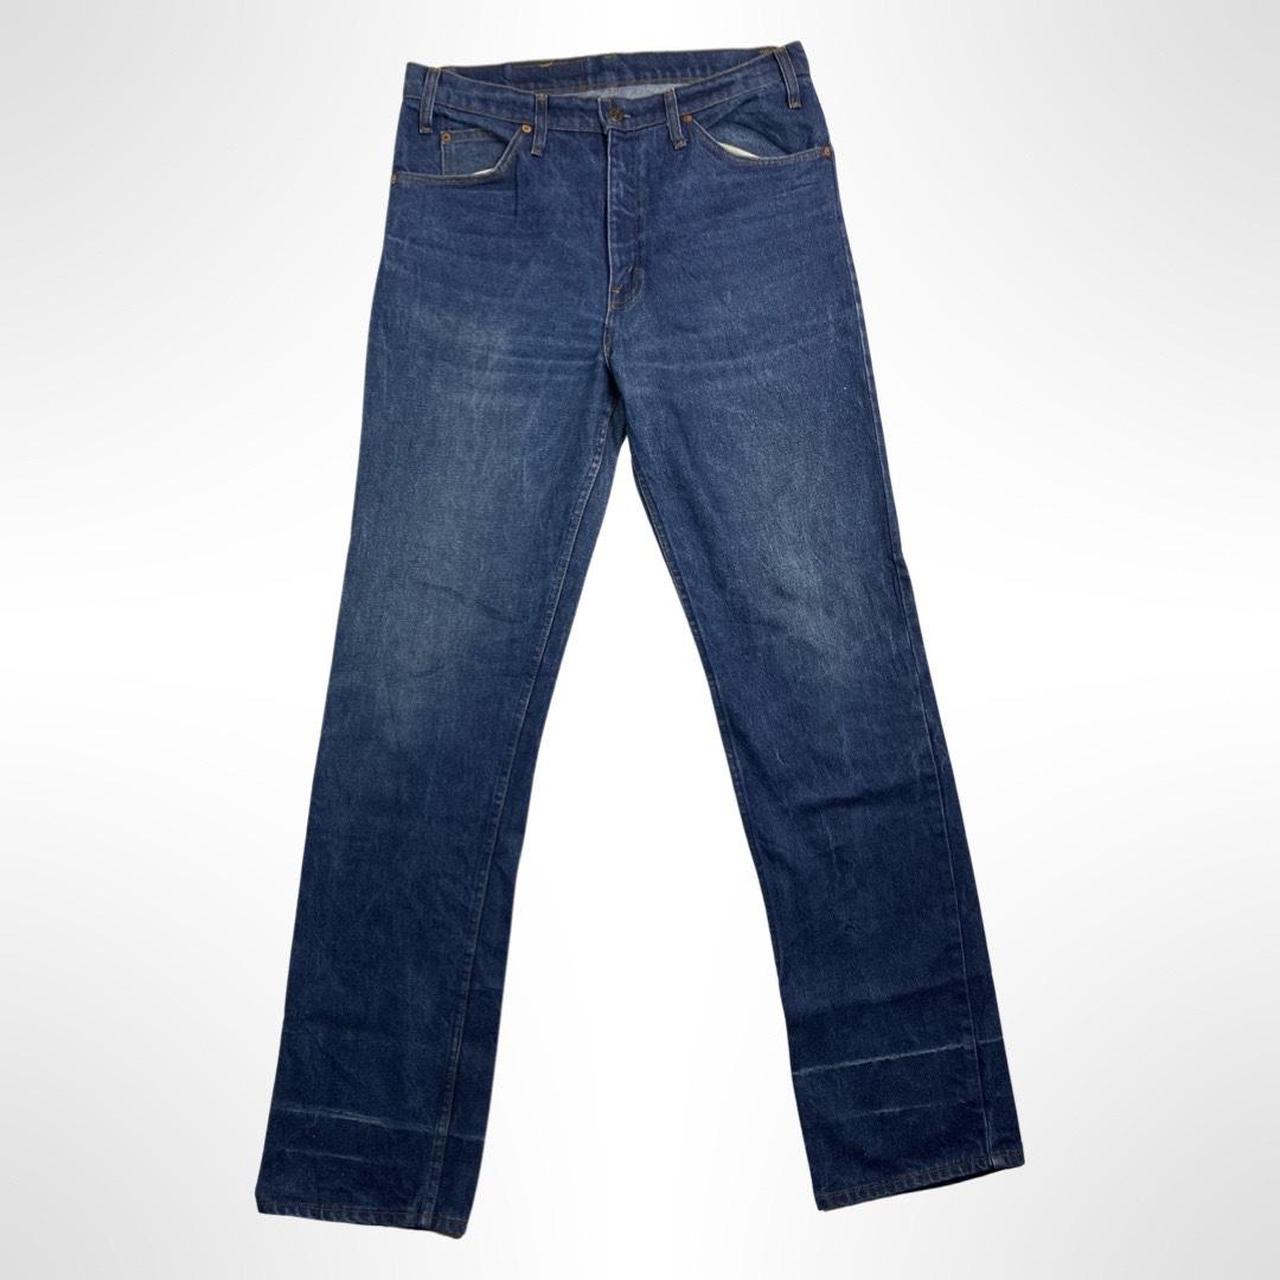 Levi's 509 Jeans vintage levis pant mid waist... - Depop